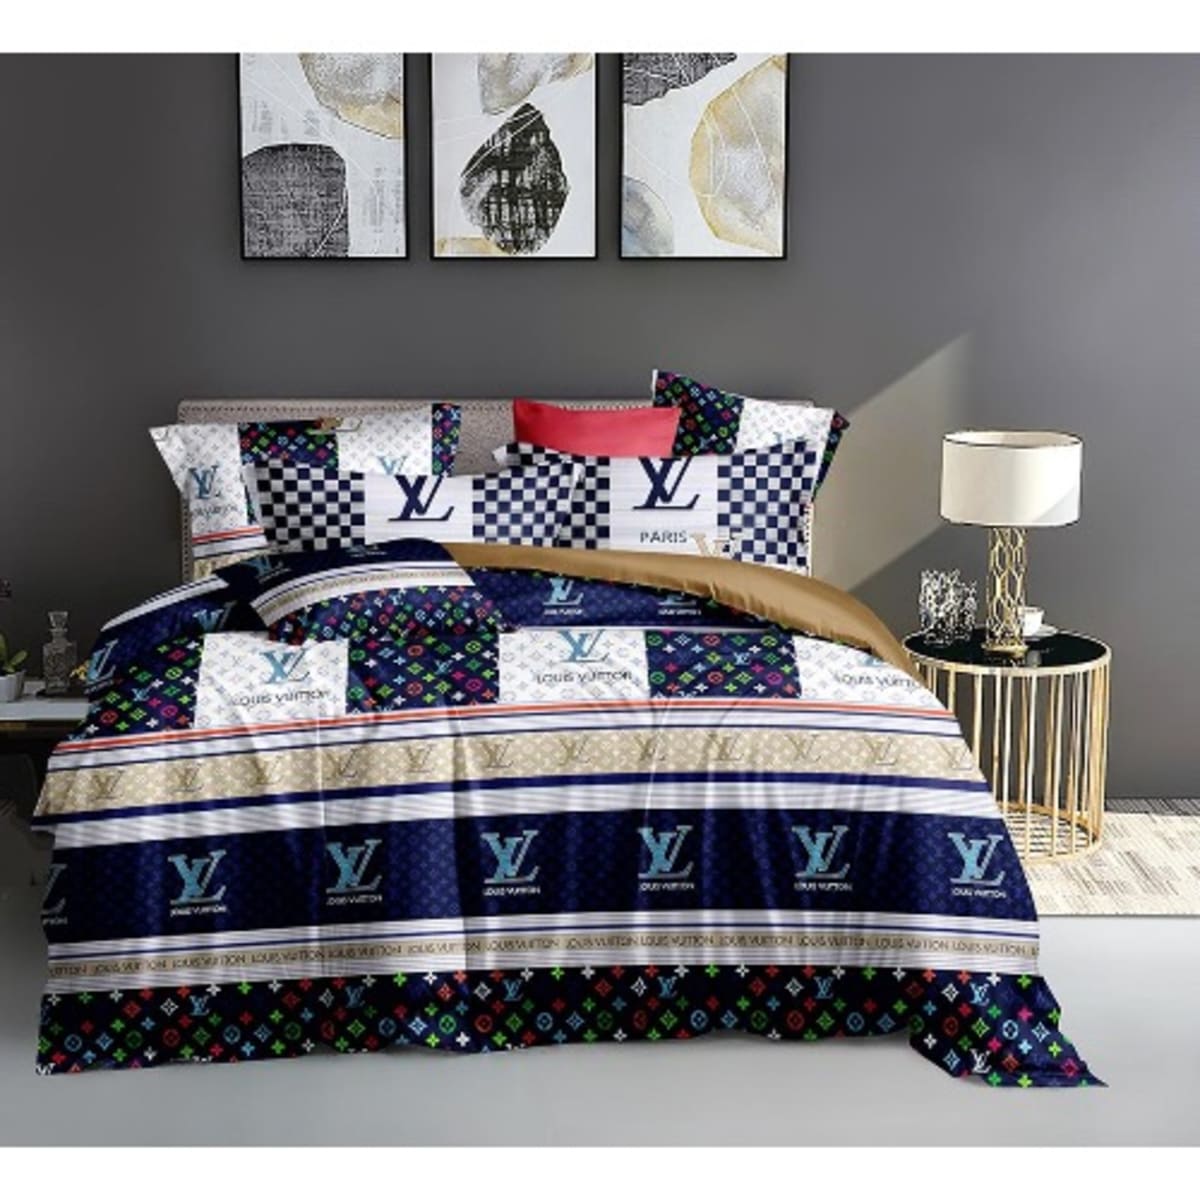 Louis Vuitton Inspired Bedding Sets - Duvet + Bedspread - Pillow